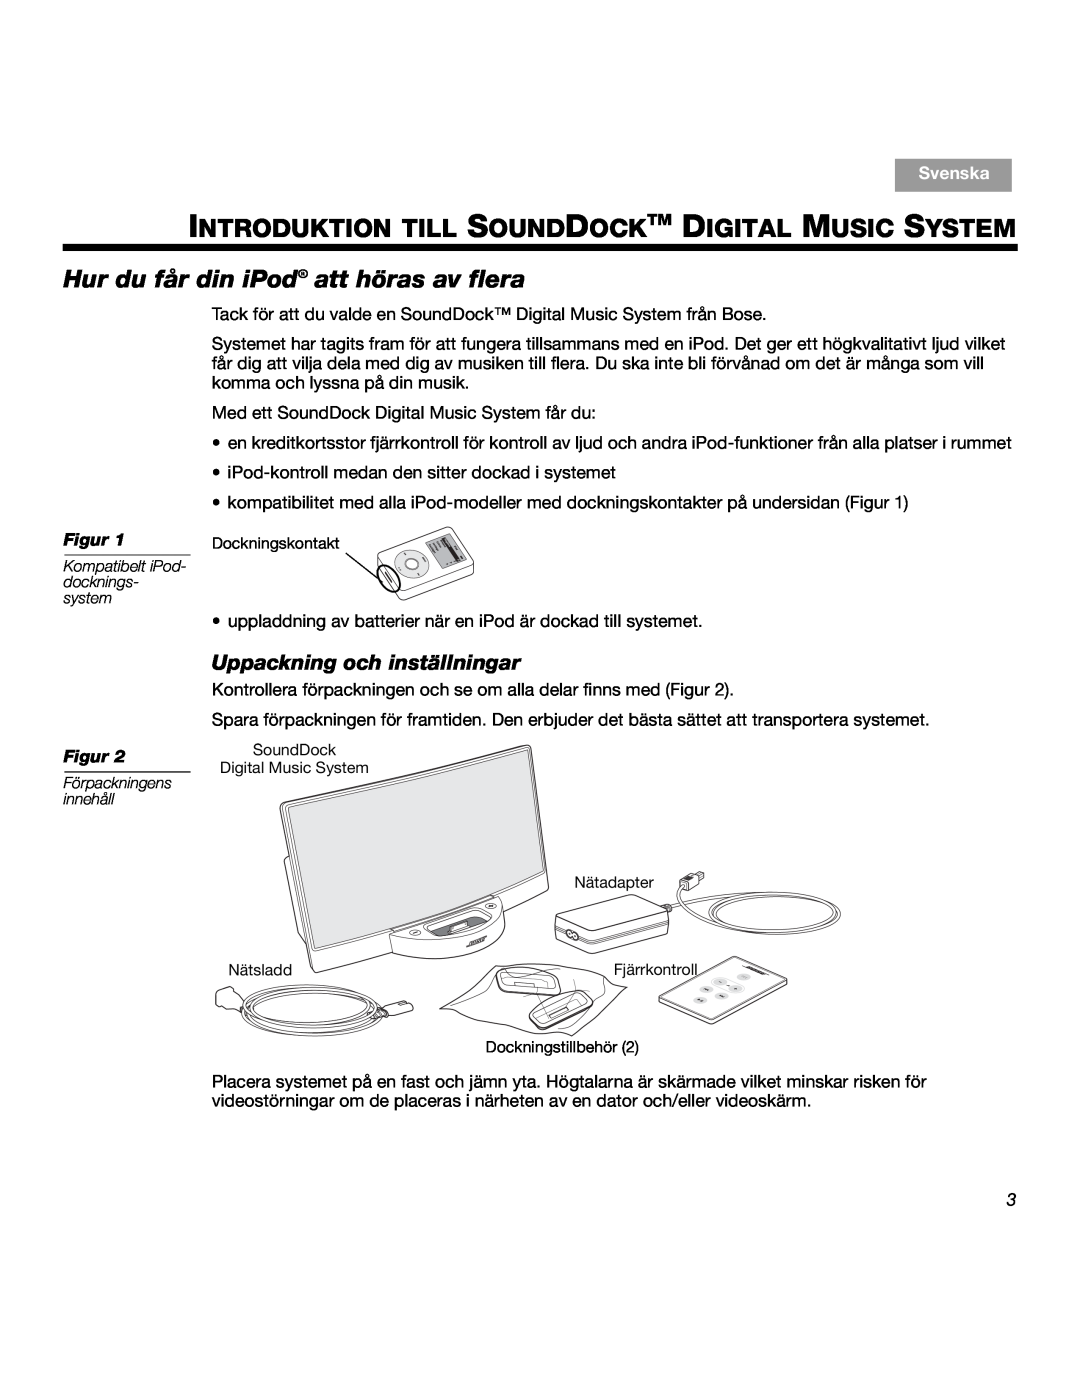 Bose SOUNDDOCKTM manual Hur du får din iPodŠ att höras av flera, Uppackning och inställningar, Svenska, Figur 